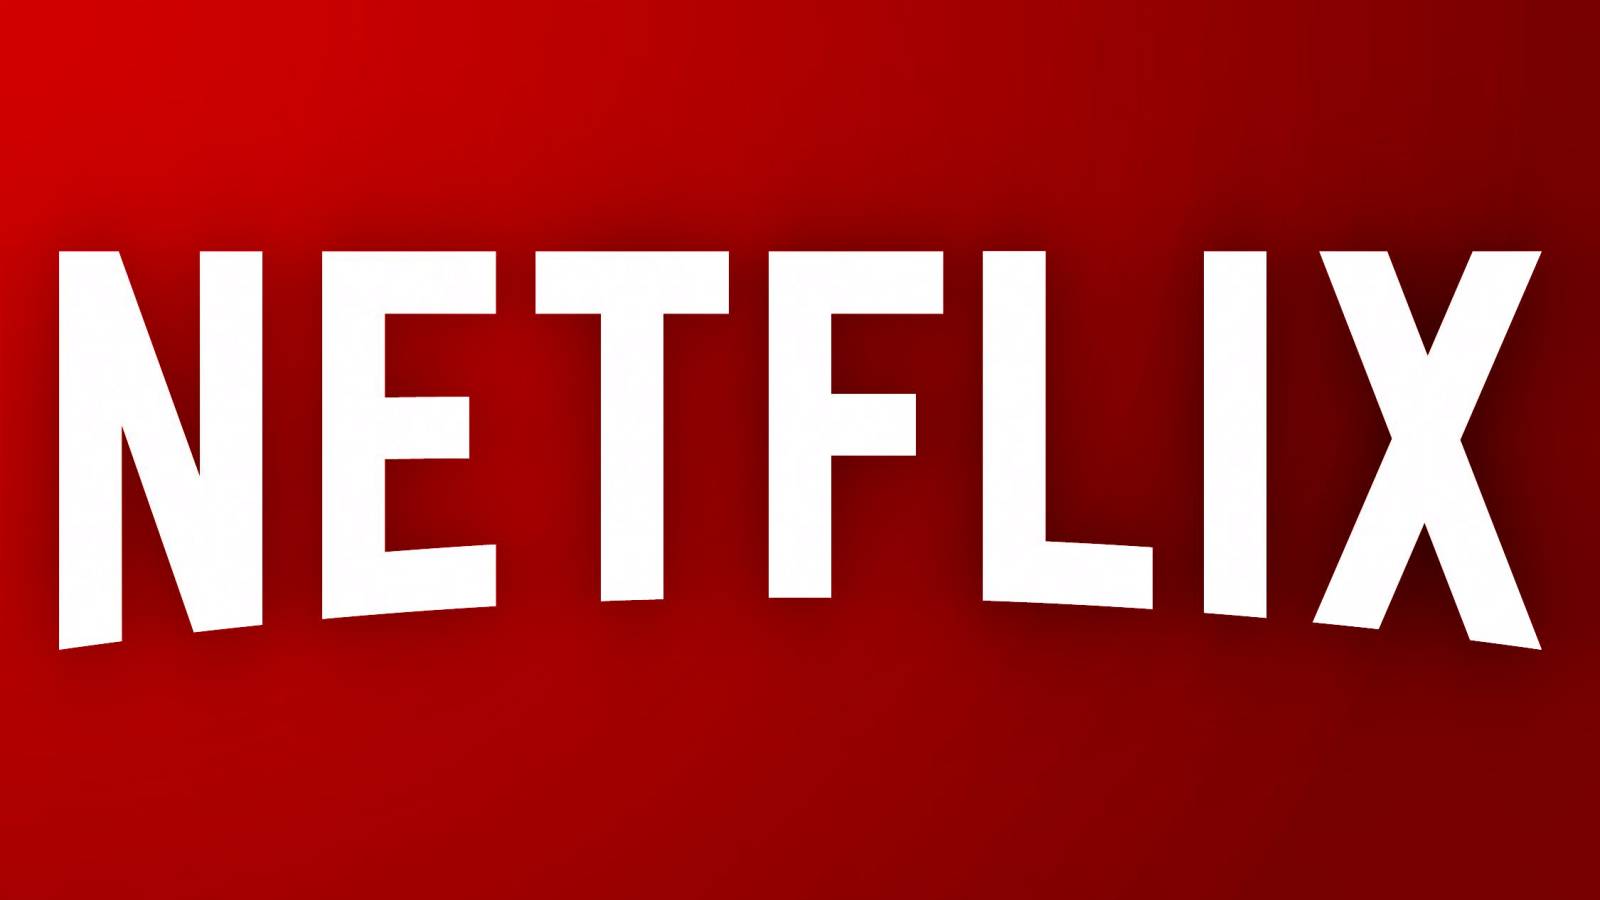 Netflix uttalande förstärker beslut STORA ändringar tillkännagavs